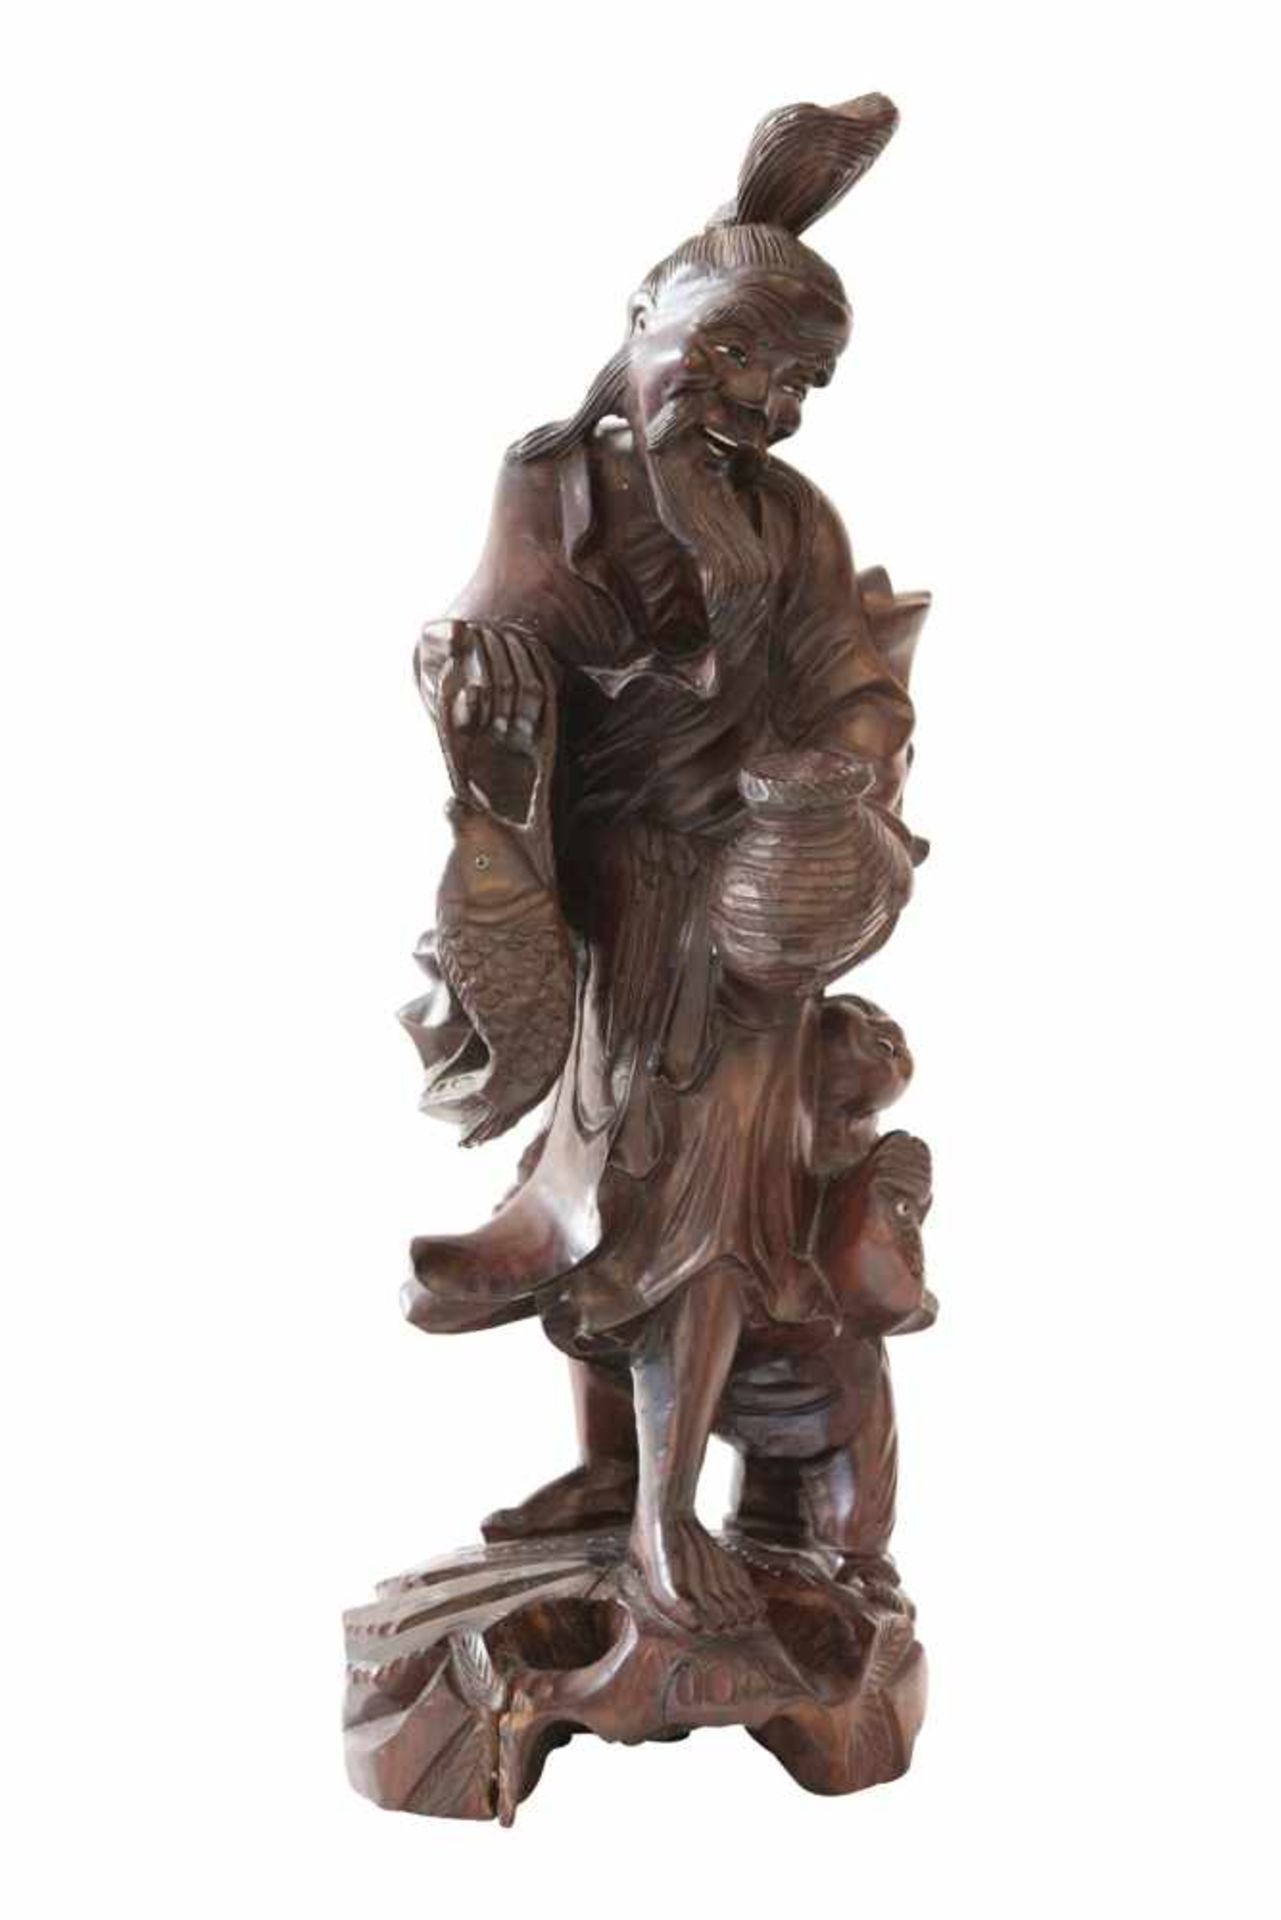 Chinesische HolzfigurHolzfigur China Mann mit Fisch und Kind an der Seite auf Holzsockel stehend, - Bild 2 aus 6